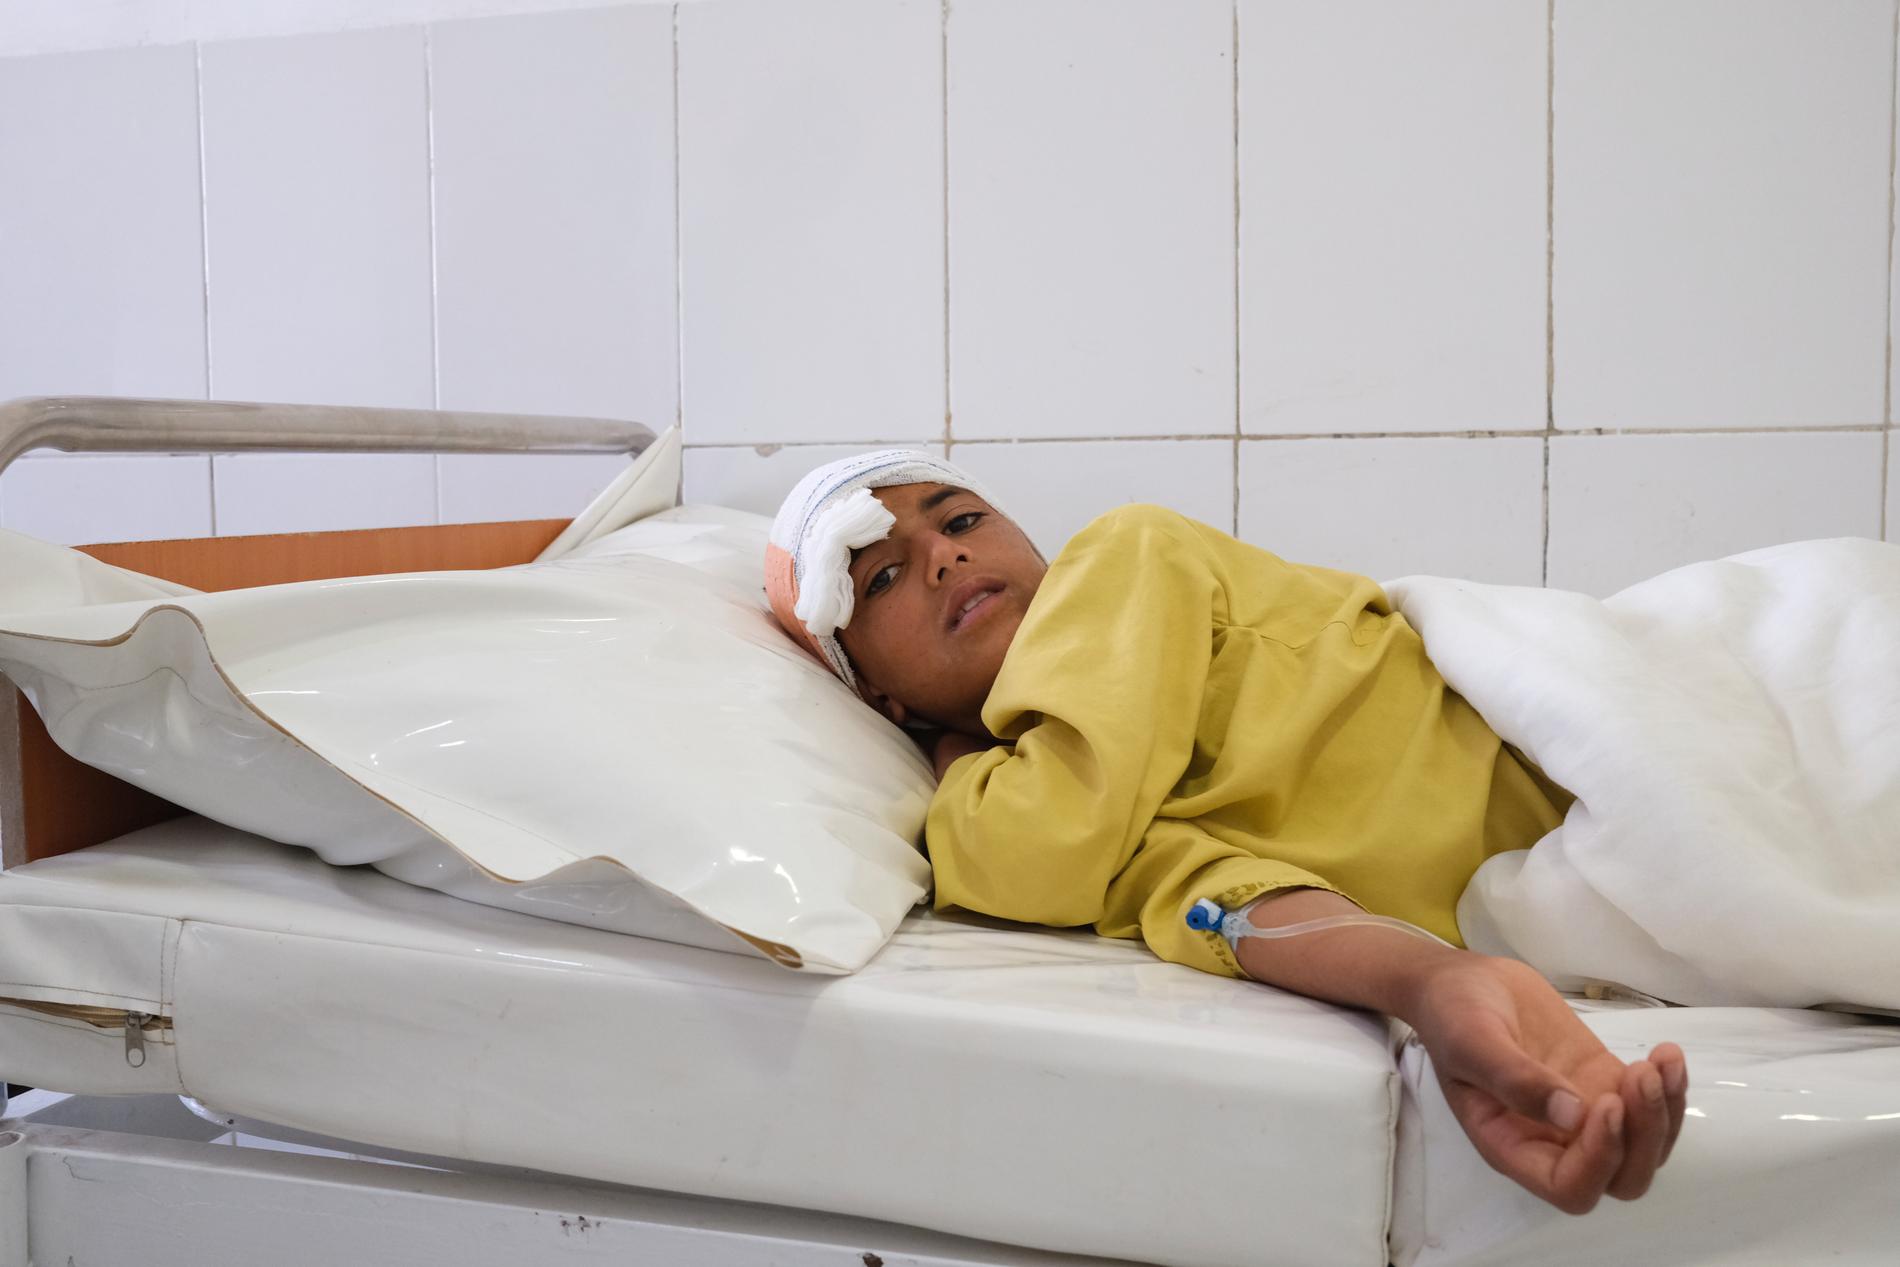 Samiullah, 12, har fått ett skott i huvudet och vårdas på sjukhus.